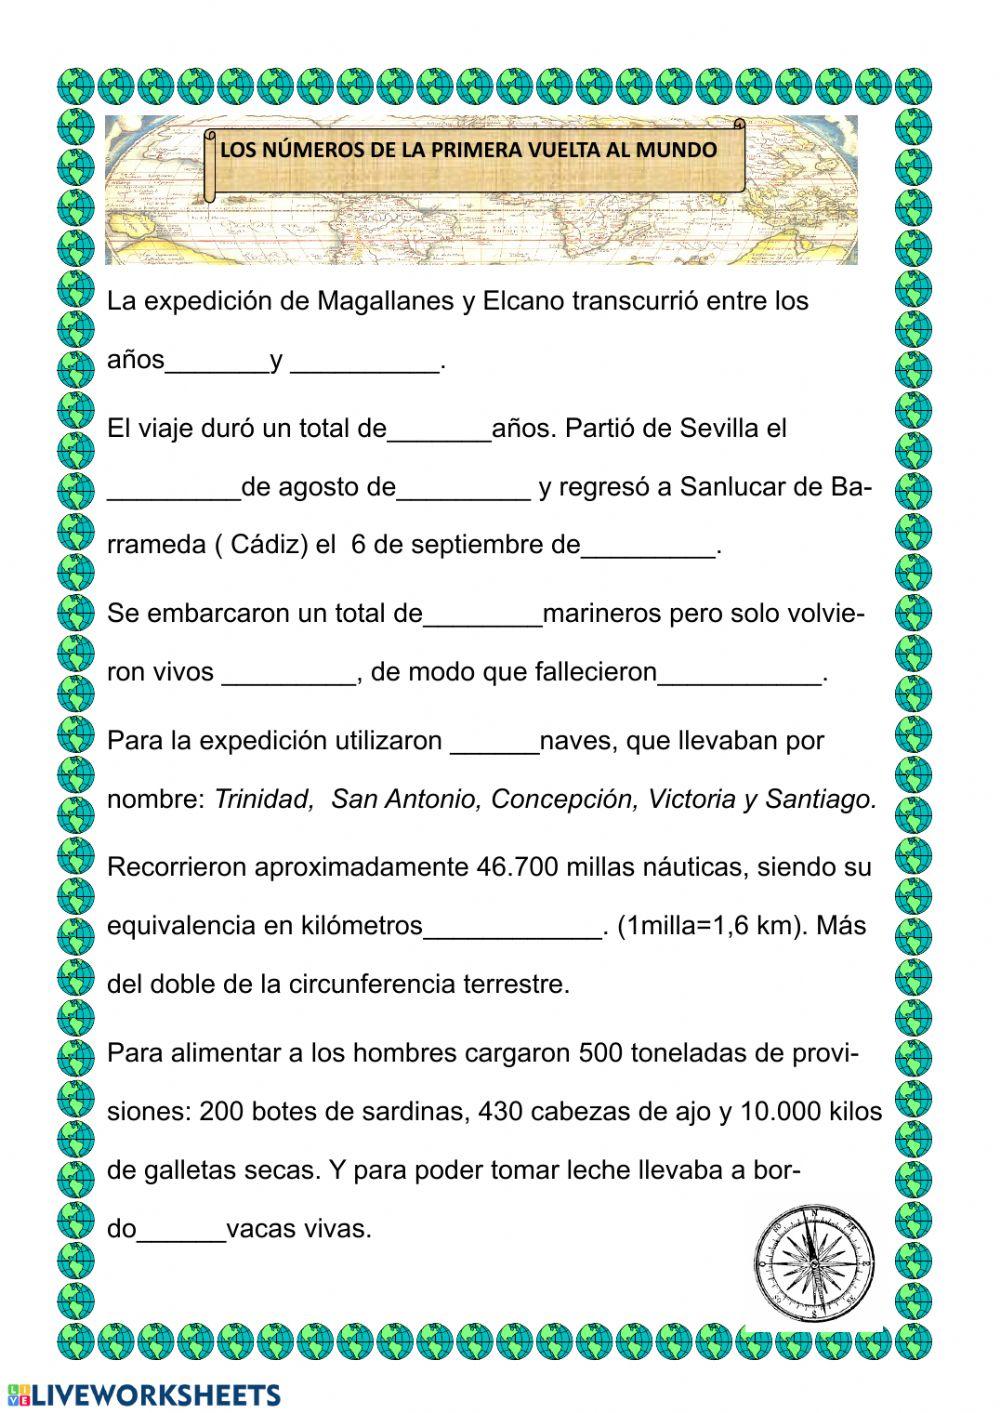 Los números del viaje de Magallanes